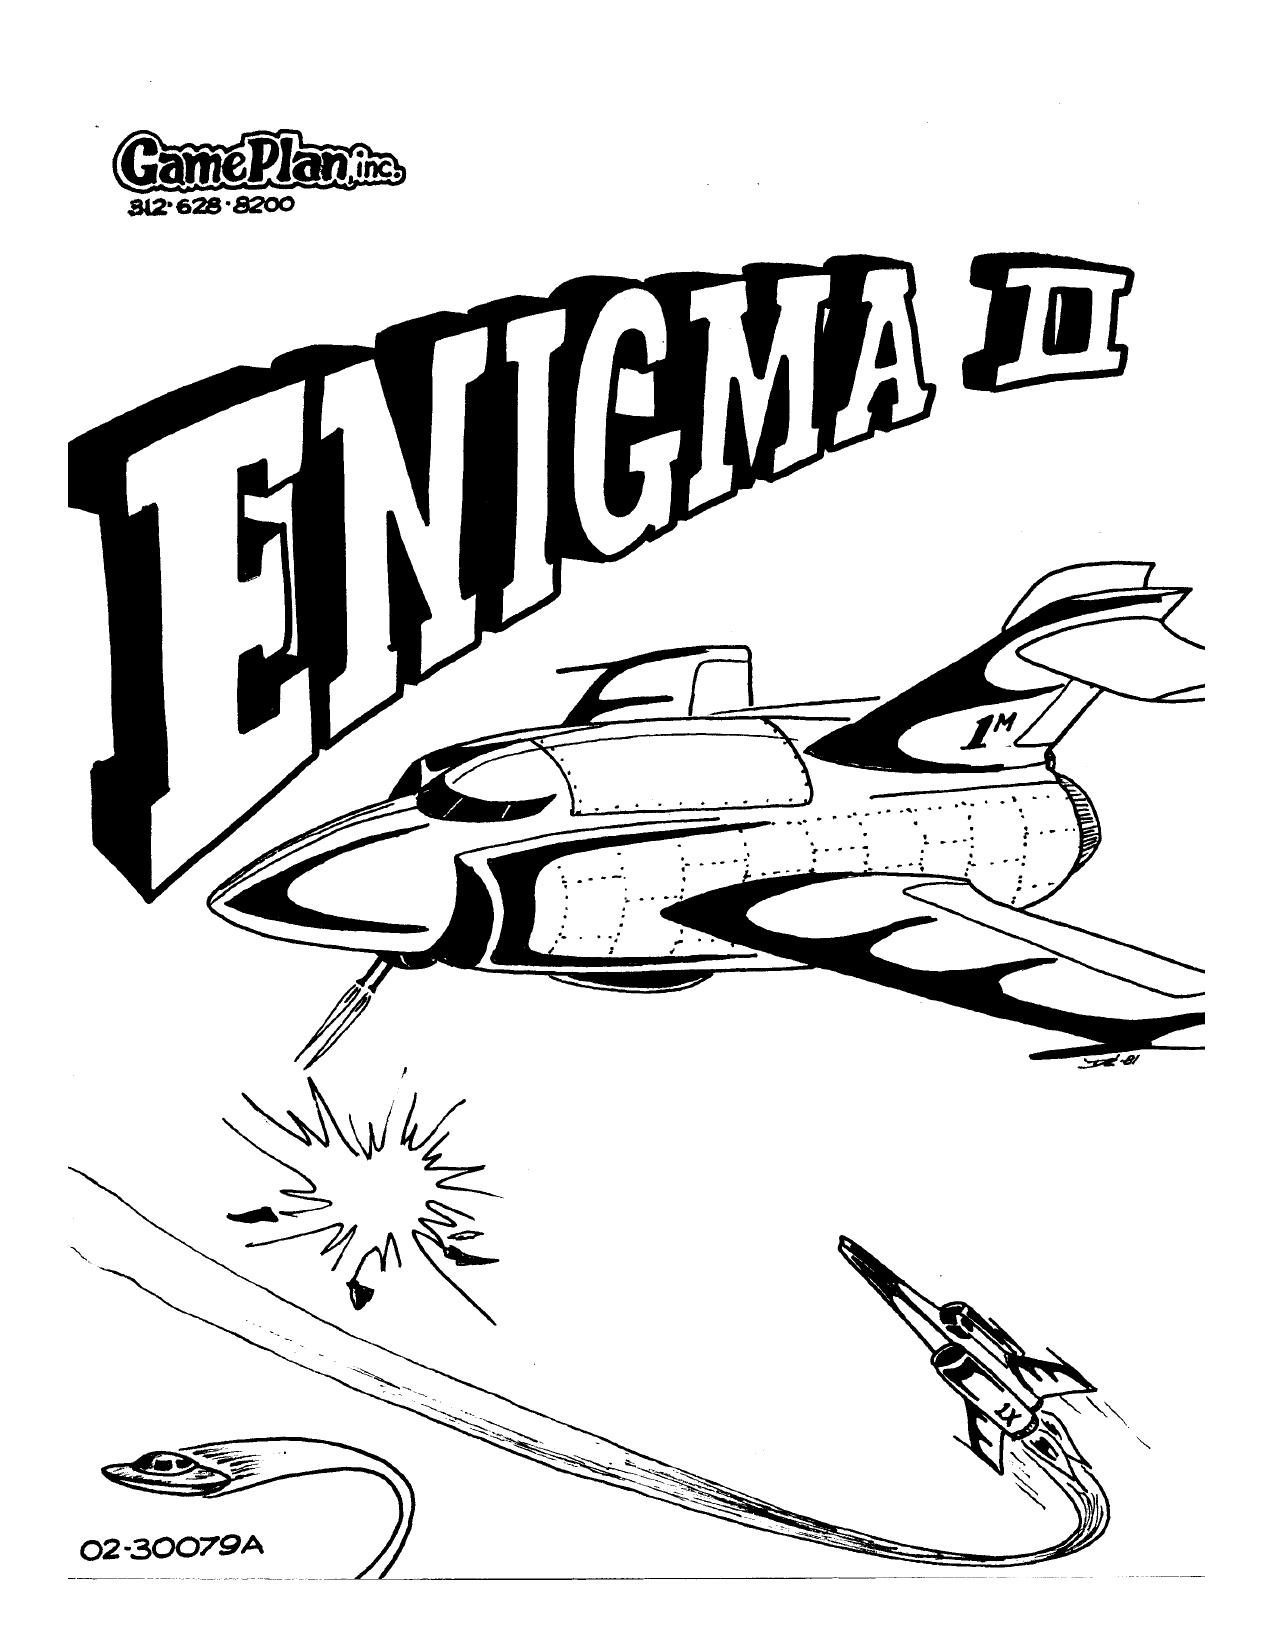 Enigma II